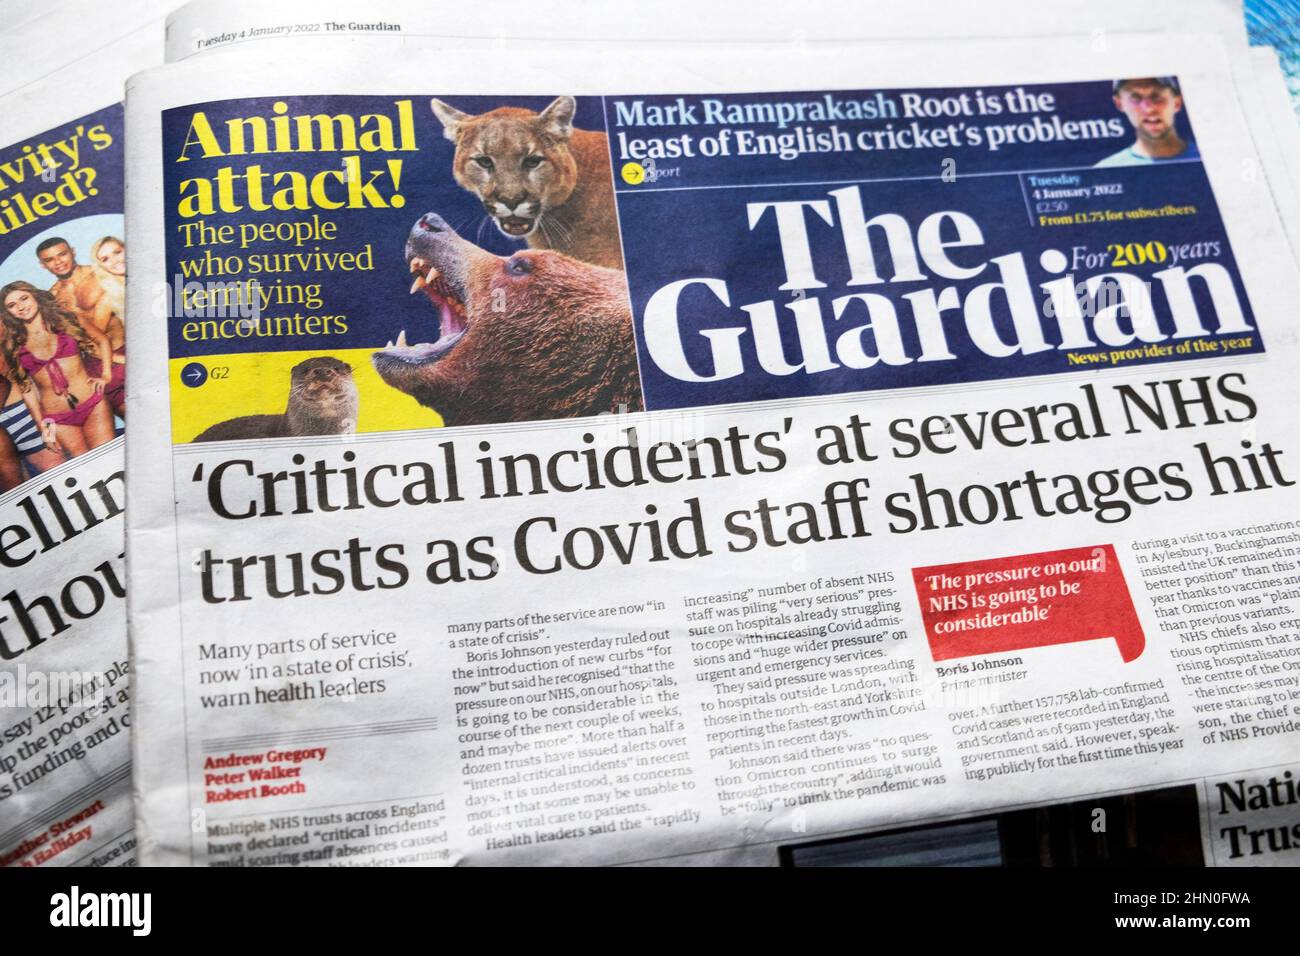 'Incidentes críticos' en varios fideicomisos del NHS como escasez de personal de Covid golpeó' Guardian portada del periódico titular el 3 de enero de 2022 Londres Inglaterra Reino Unido Foto de stock